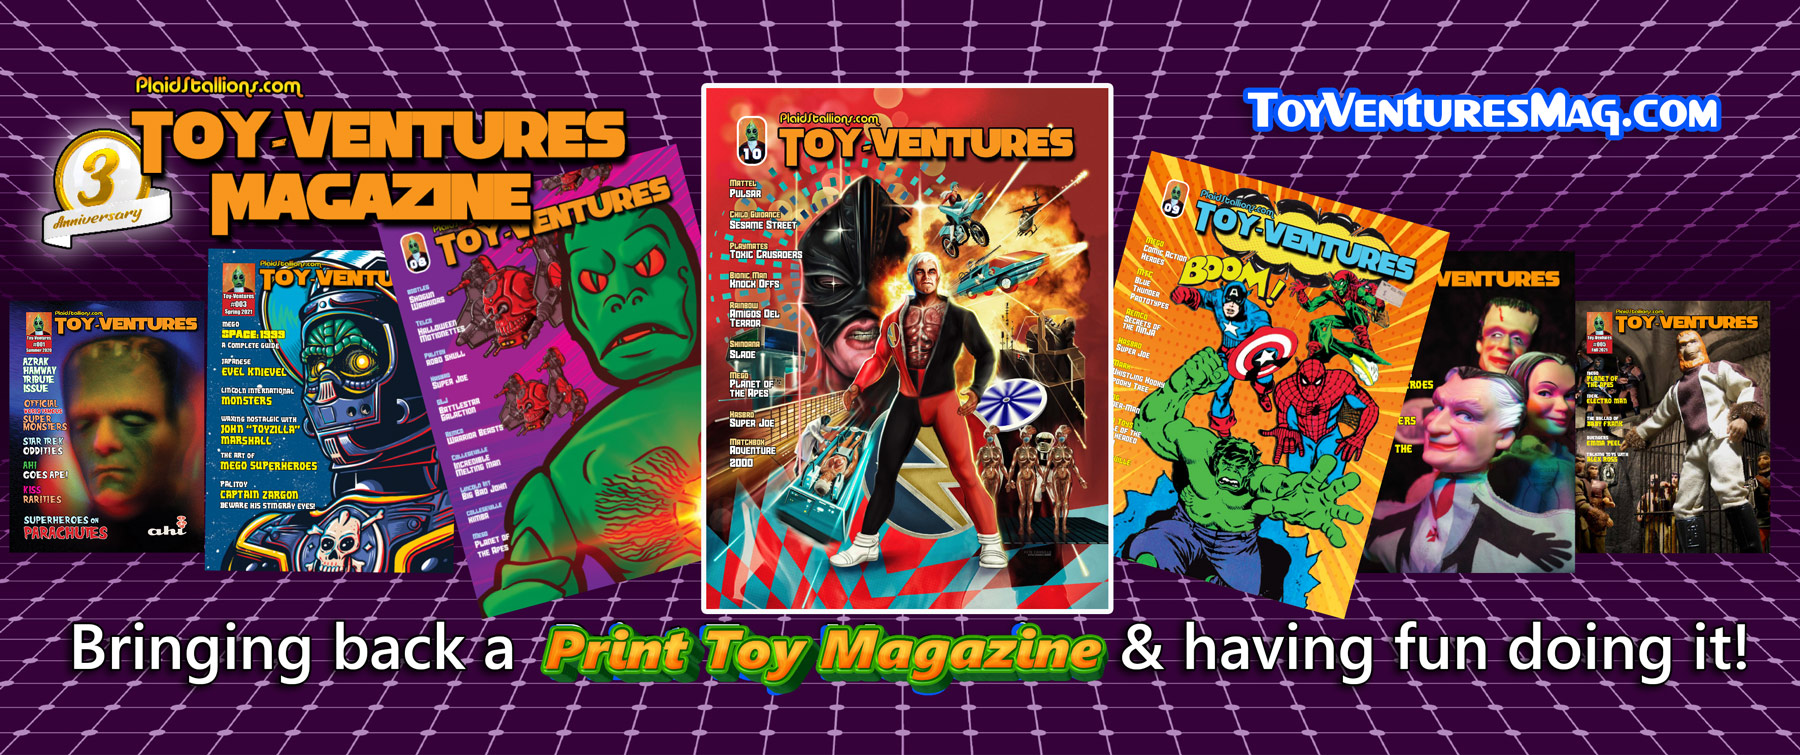 Toy-Ventures Magazine- 3 years of bringing back the toy magazine